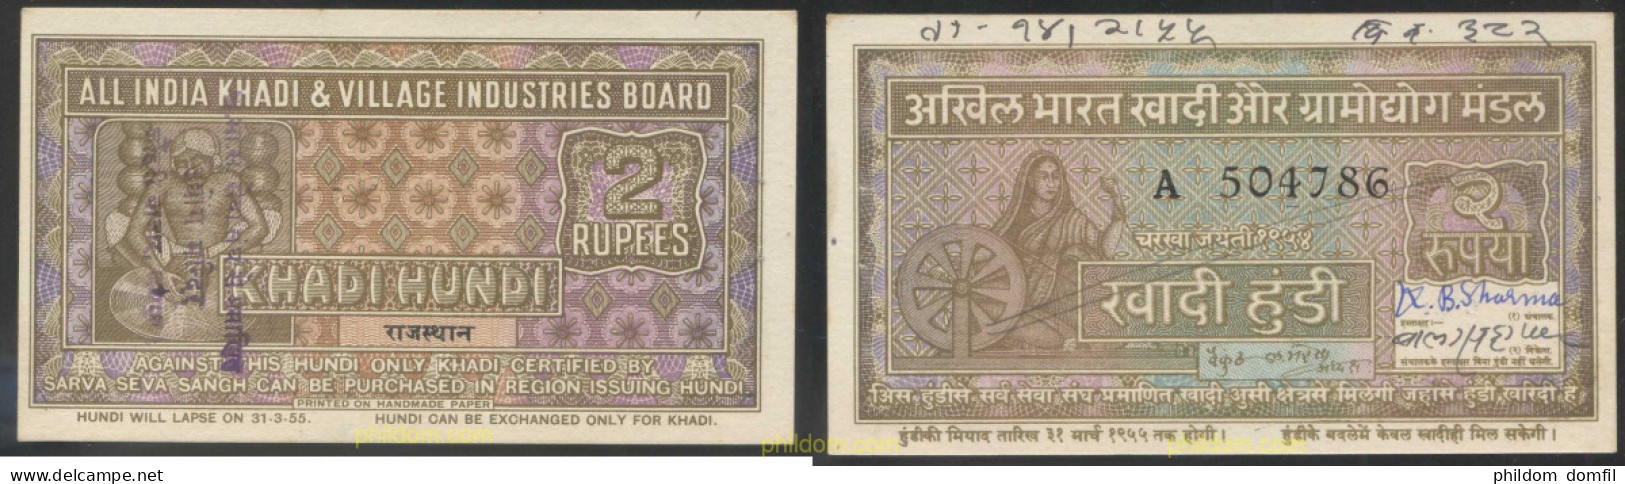 4649 INDIA 1955 INDIA KHADI HUNDI 2 RUPEES 1955 - Inde